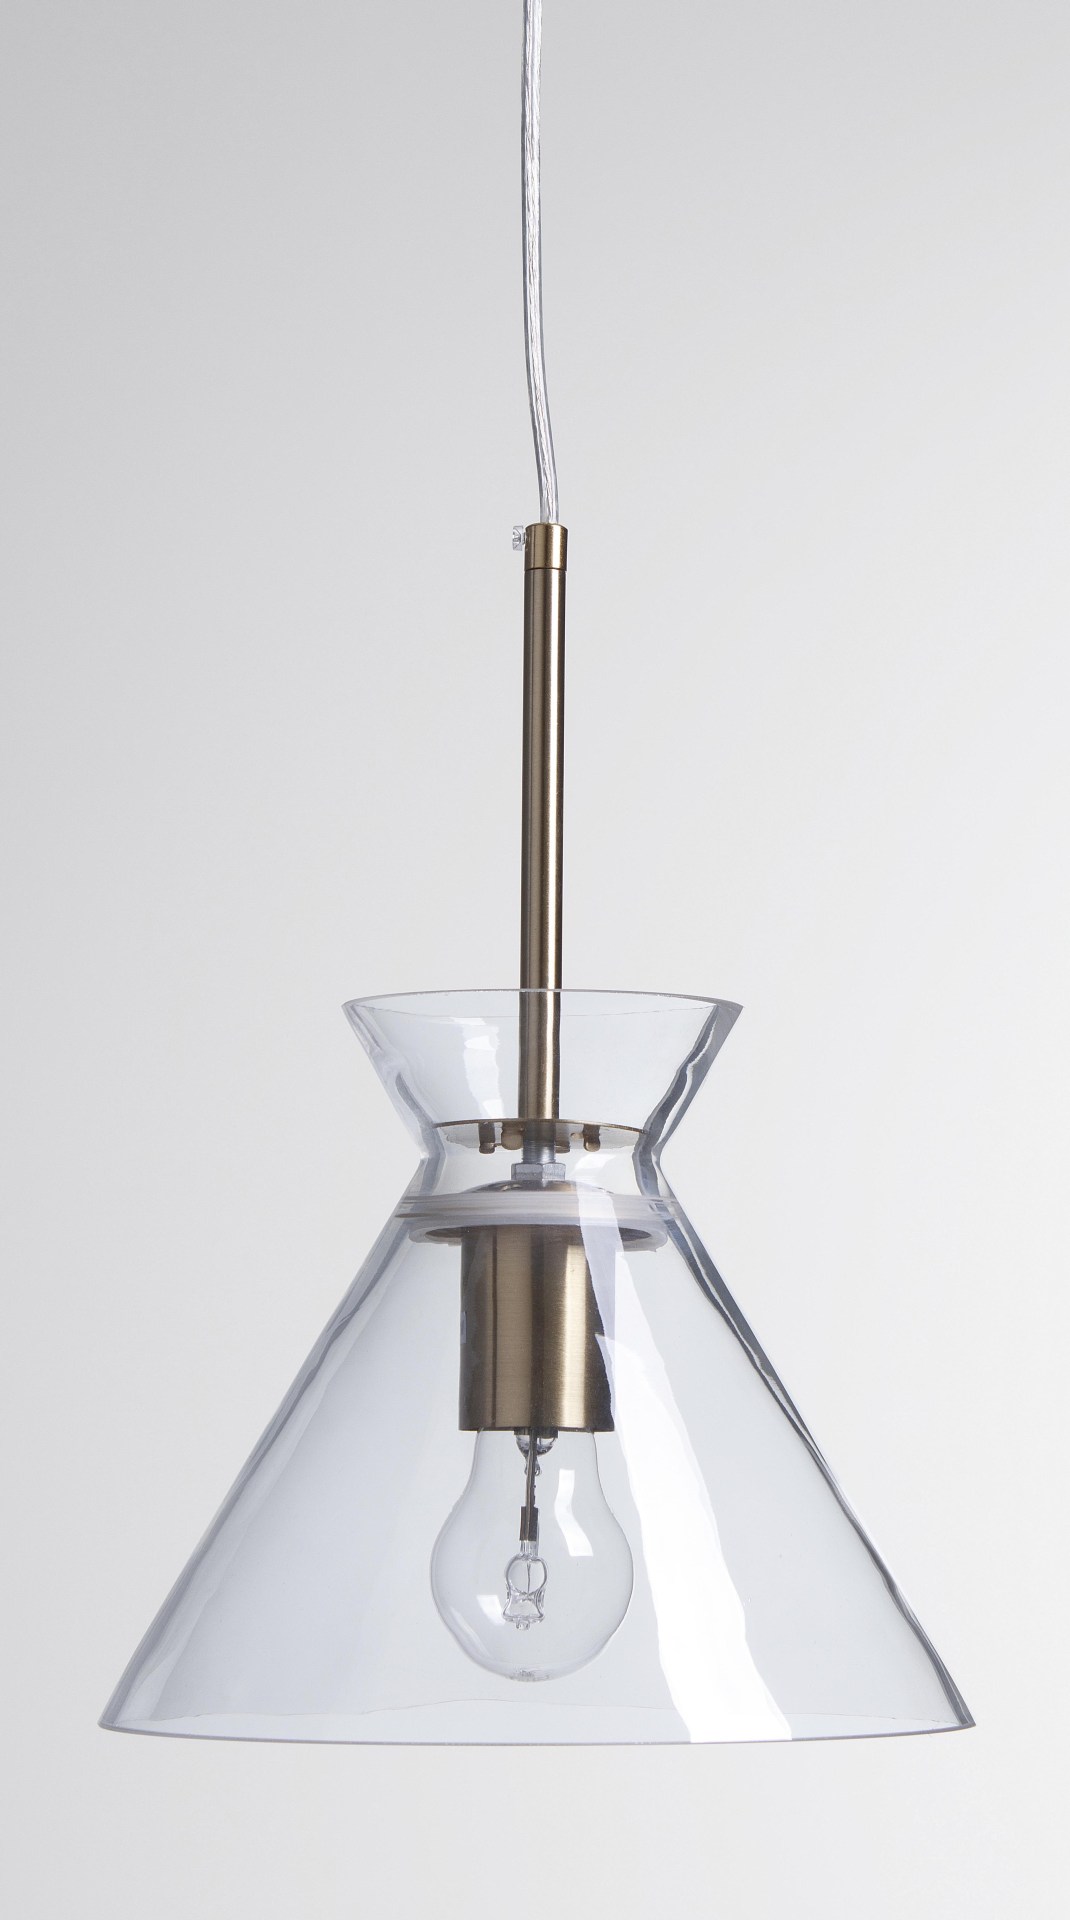 Die Hängeleuchte Sparkle überzeugt mit ihrem modernen Design. Gefertigt wurde sie aus Metall, welches einen goldenen Farbton besitzt. Die Lampenschirme sind aus Glas und sind klar. Die Lampe besitzt eine Höhe von 160 cm.